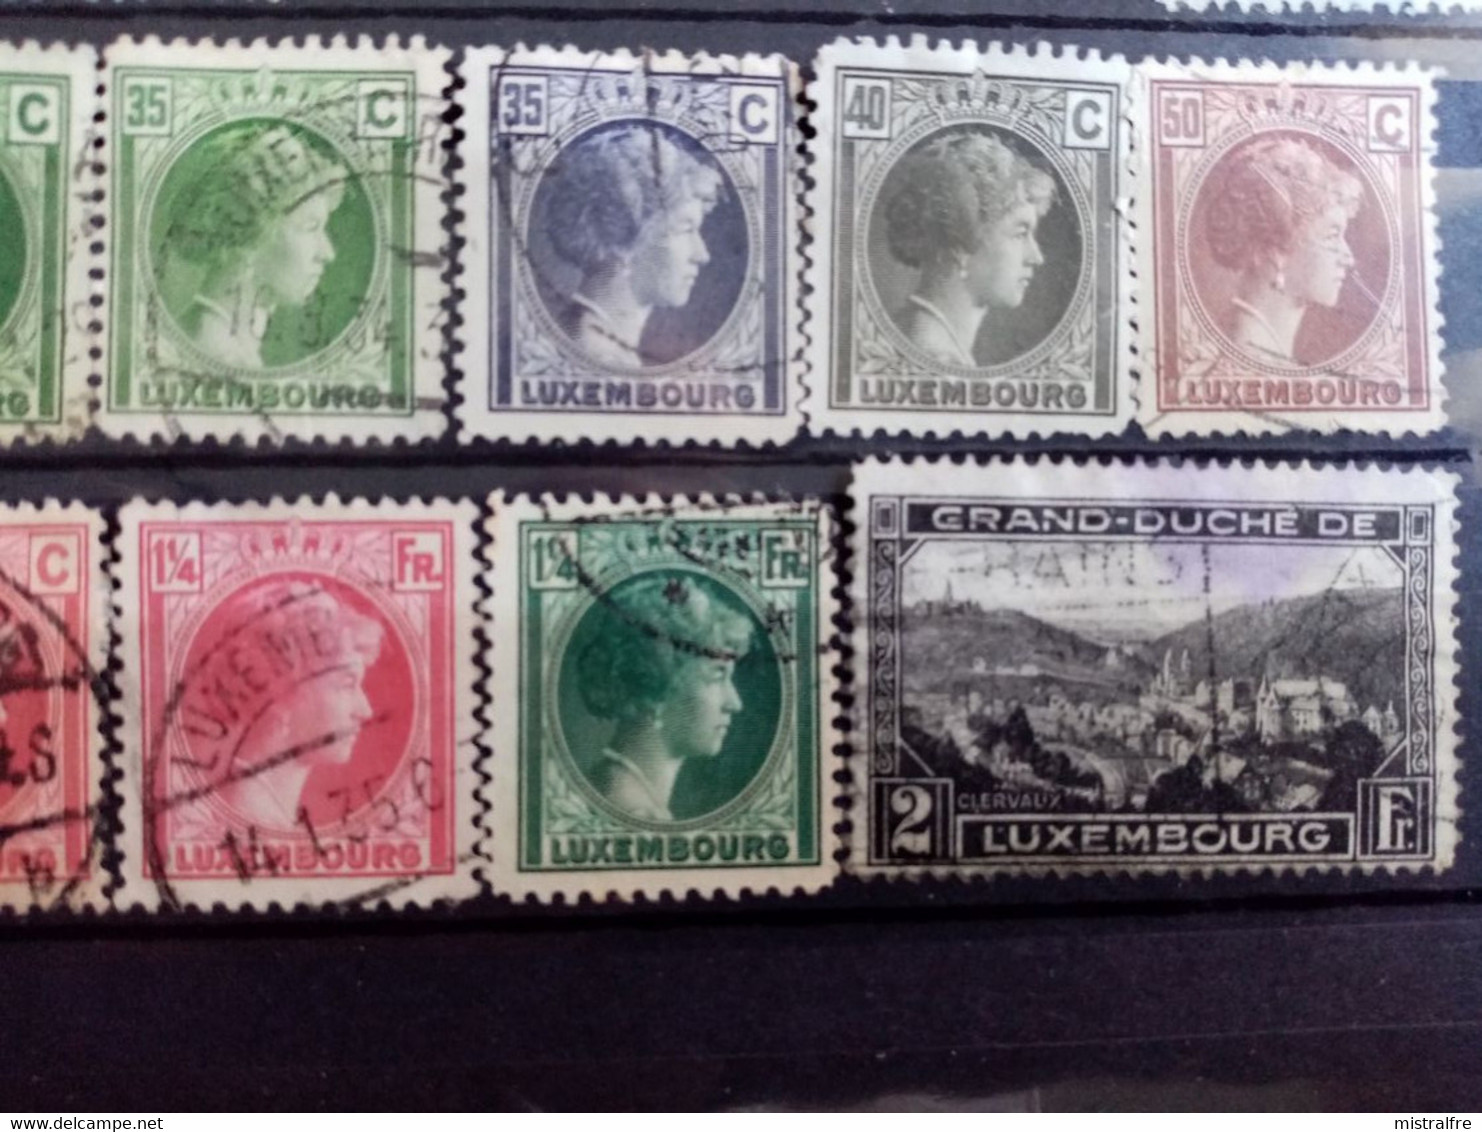 LUXEMBOURG.1882 à 1928. N° 47 à 208. Lot de 59 timbres oblitérés  . Côte YT 2020  : 30,85 €